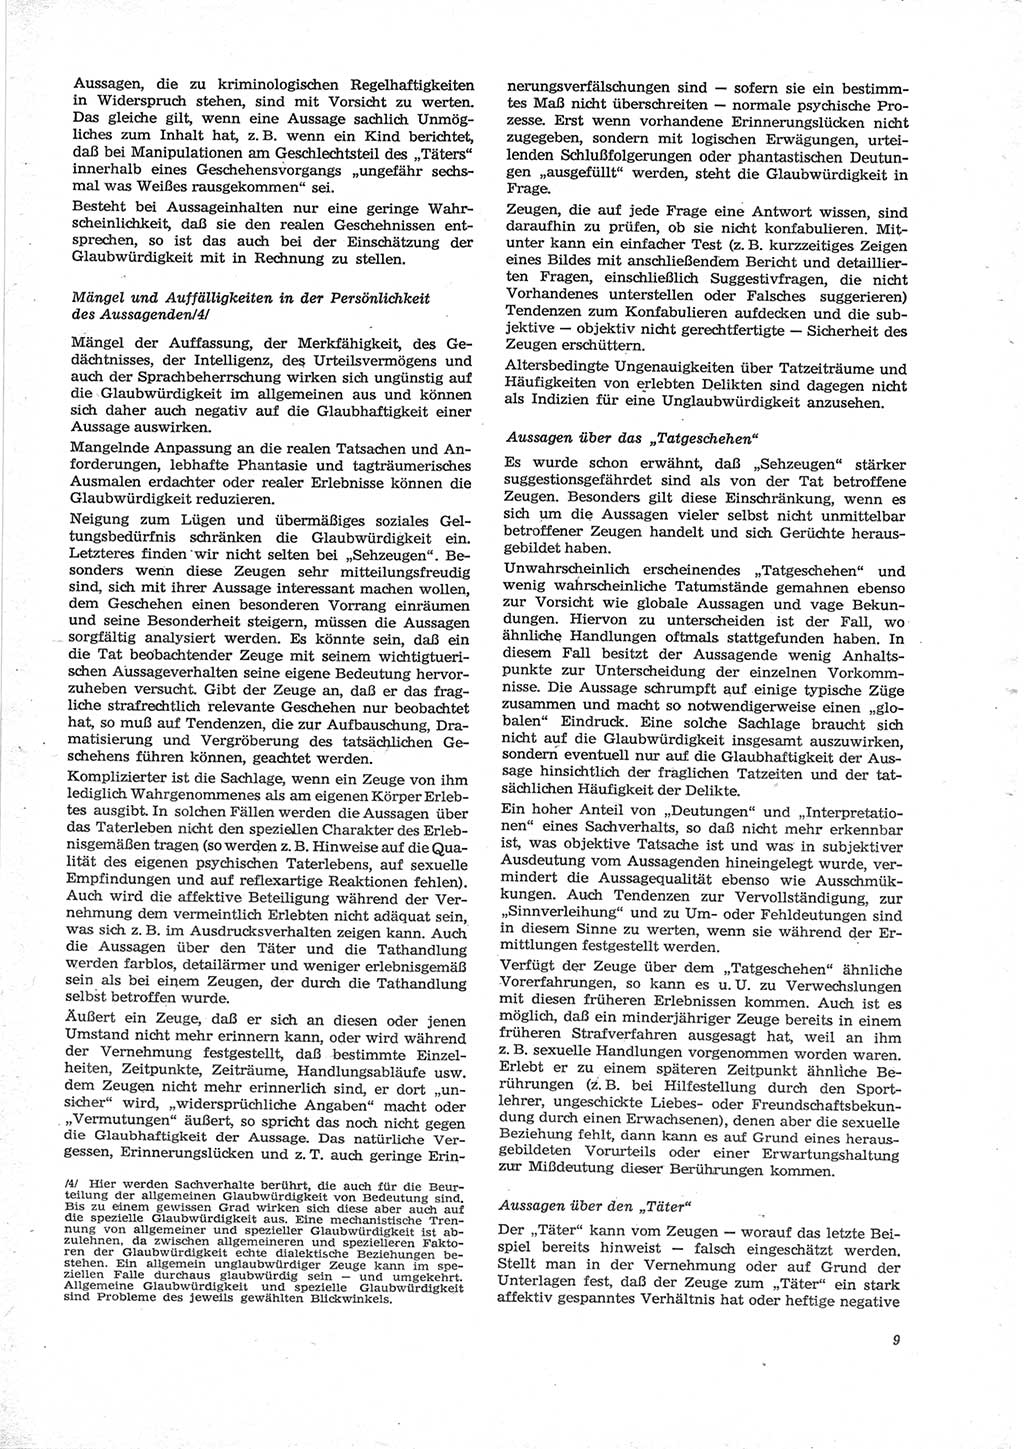 Neue Justiz (NJ), Zeitschrift für Recht und Rechtswissenschaft [Deutsche Demokratische Republik (DDR)], 28. Jahrgang 1974, Seite 9 (NJ DDR 1974, S. 9)